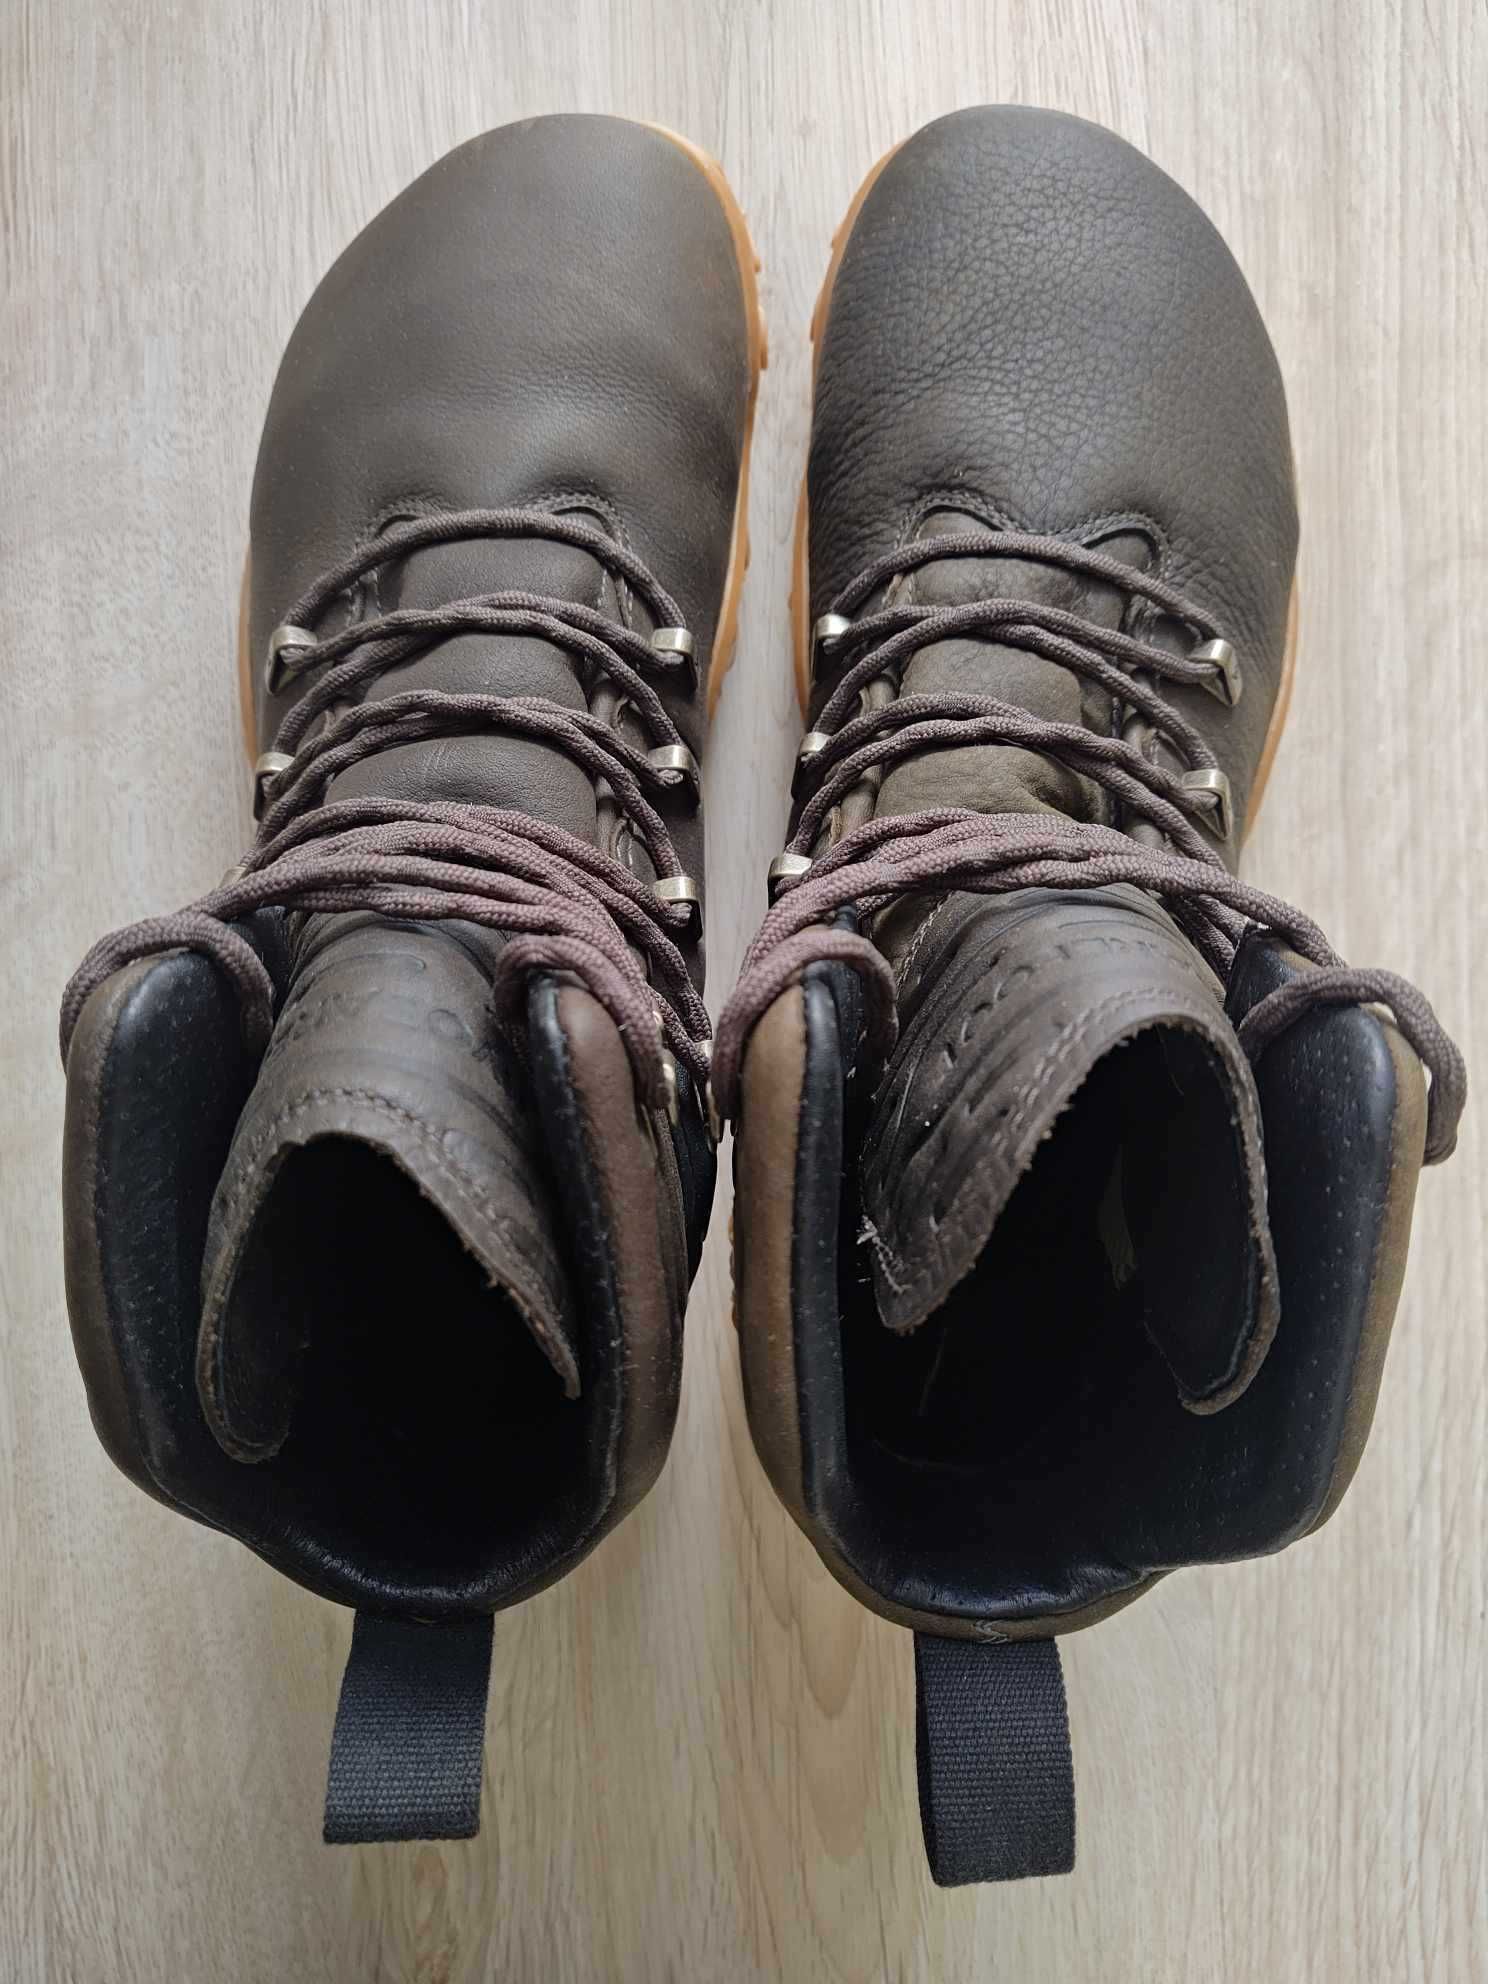 Vivobarefoot туристически боси EU 42 мъжки обувки